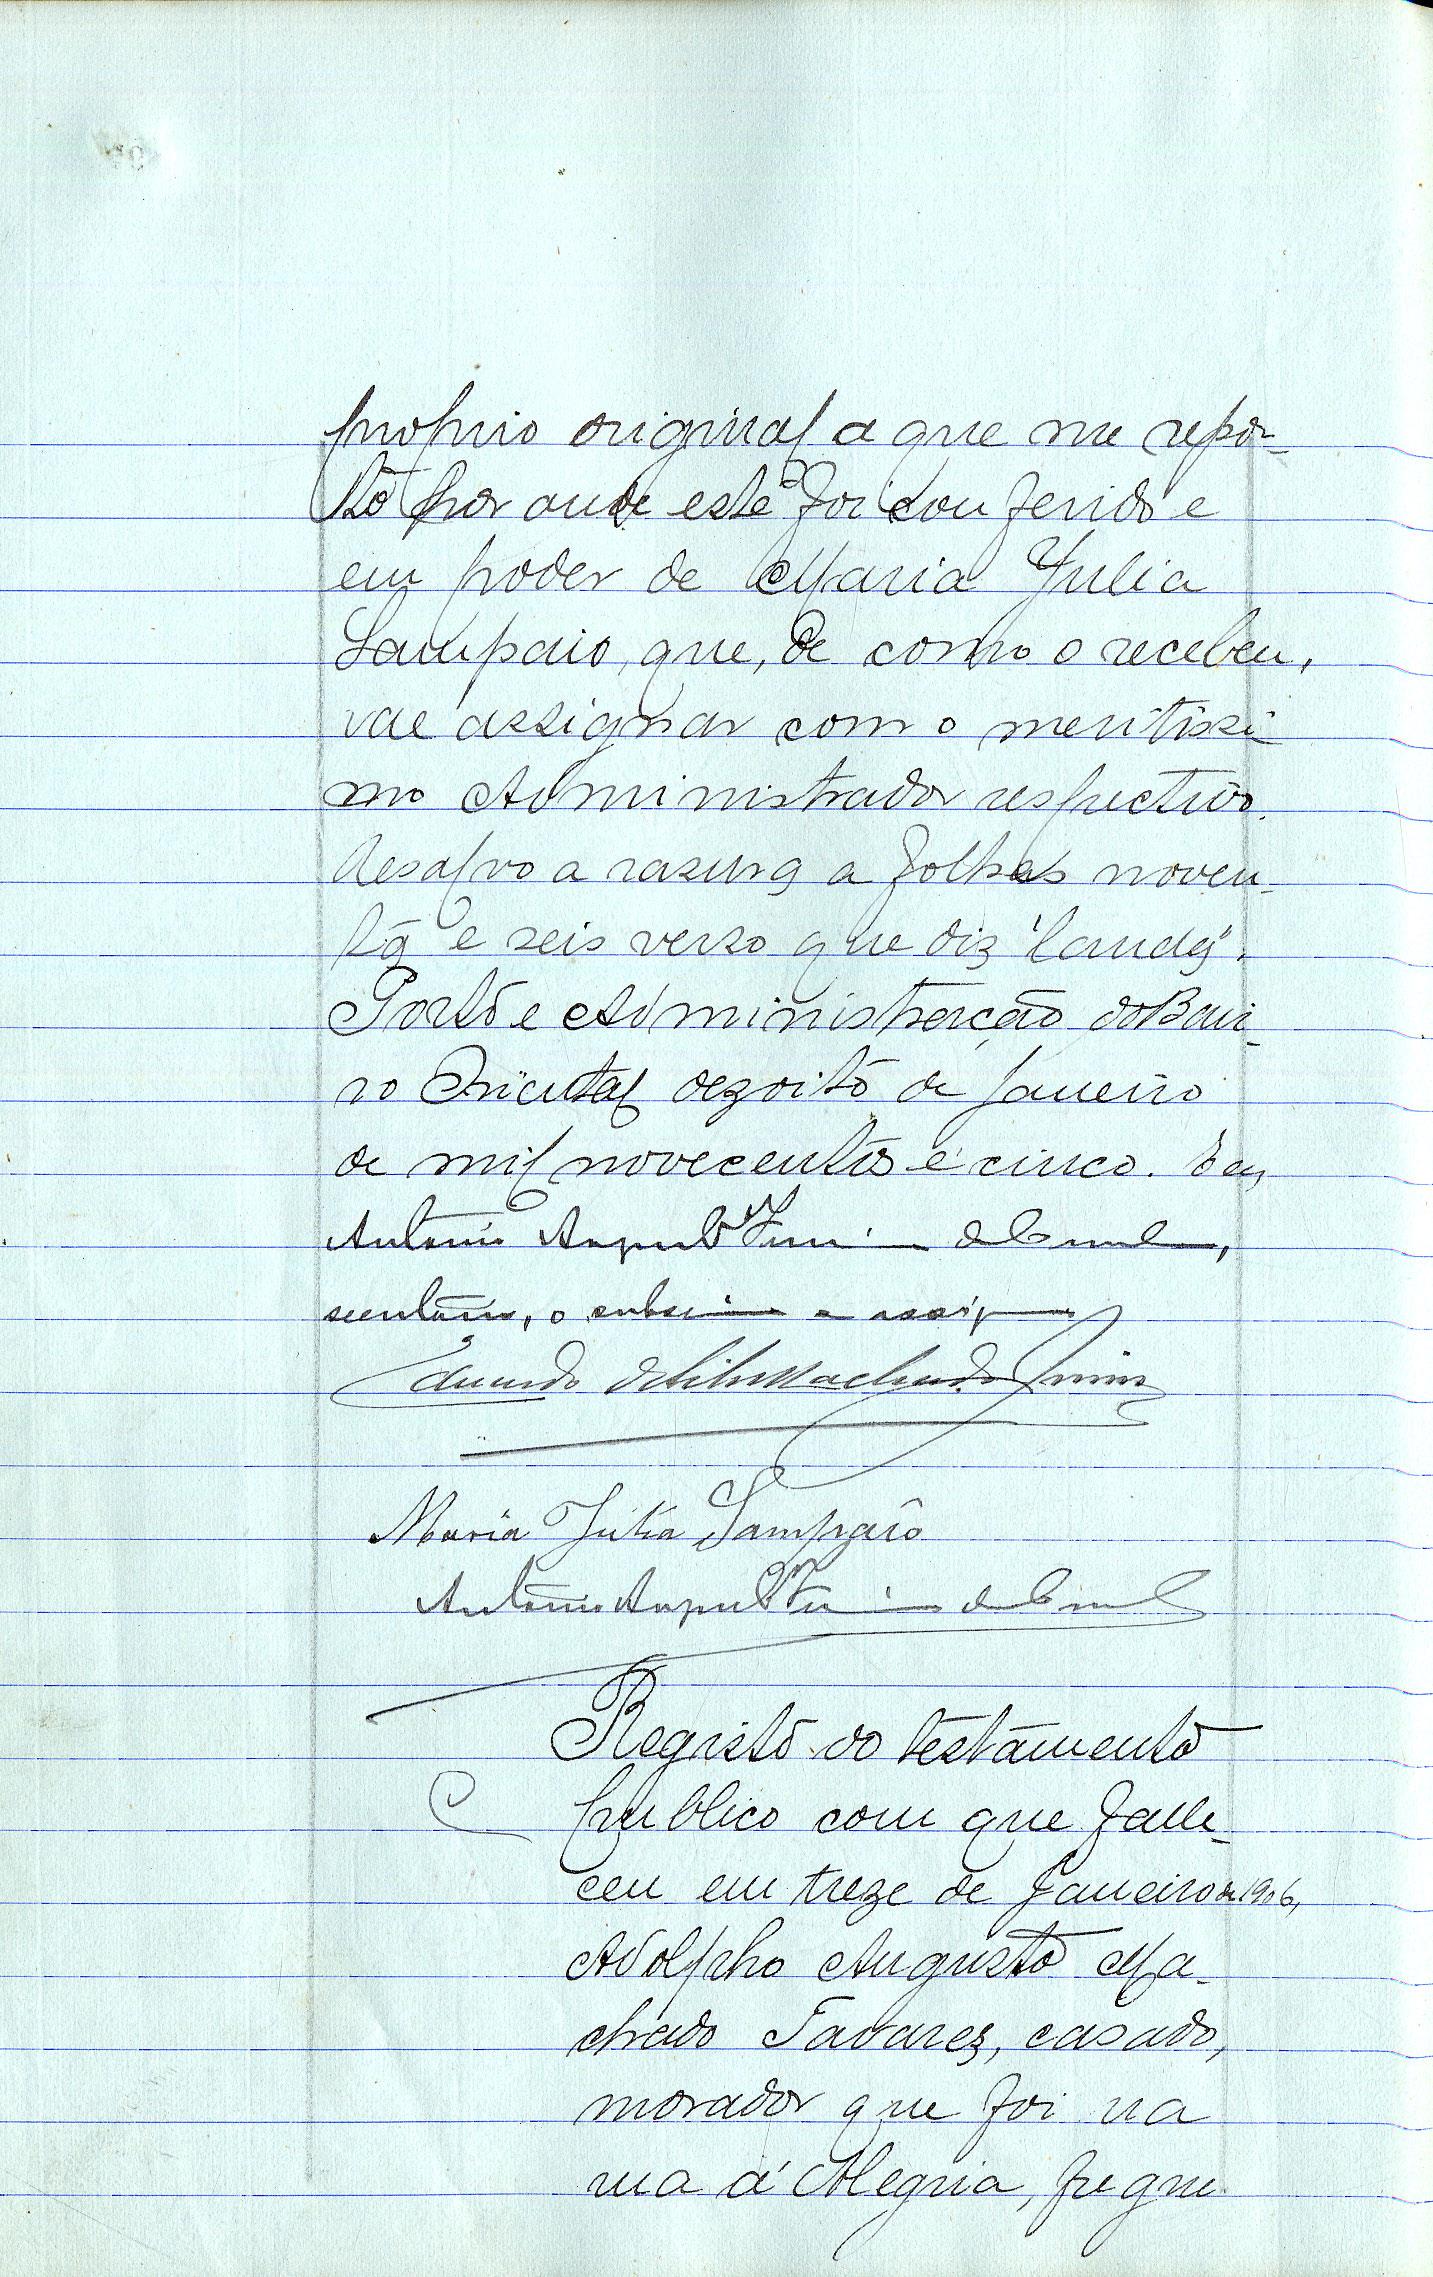 Registo do testamento com que faleceu Adolfo Augusto Machado Tavares, empregado público